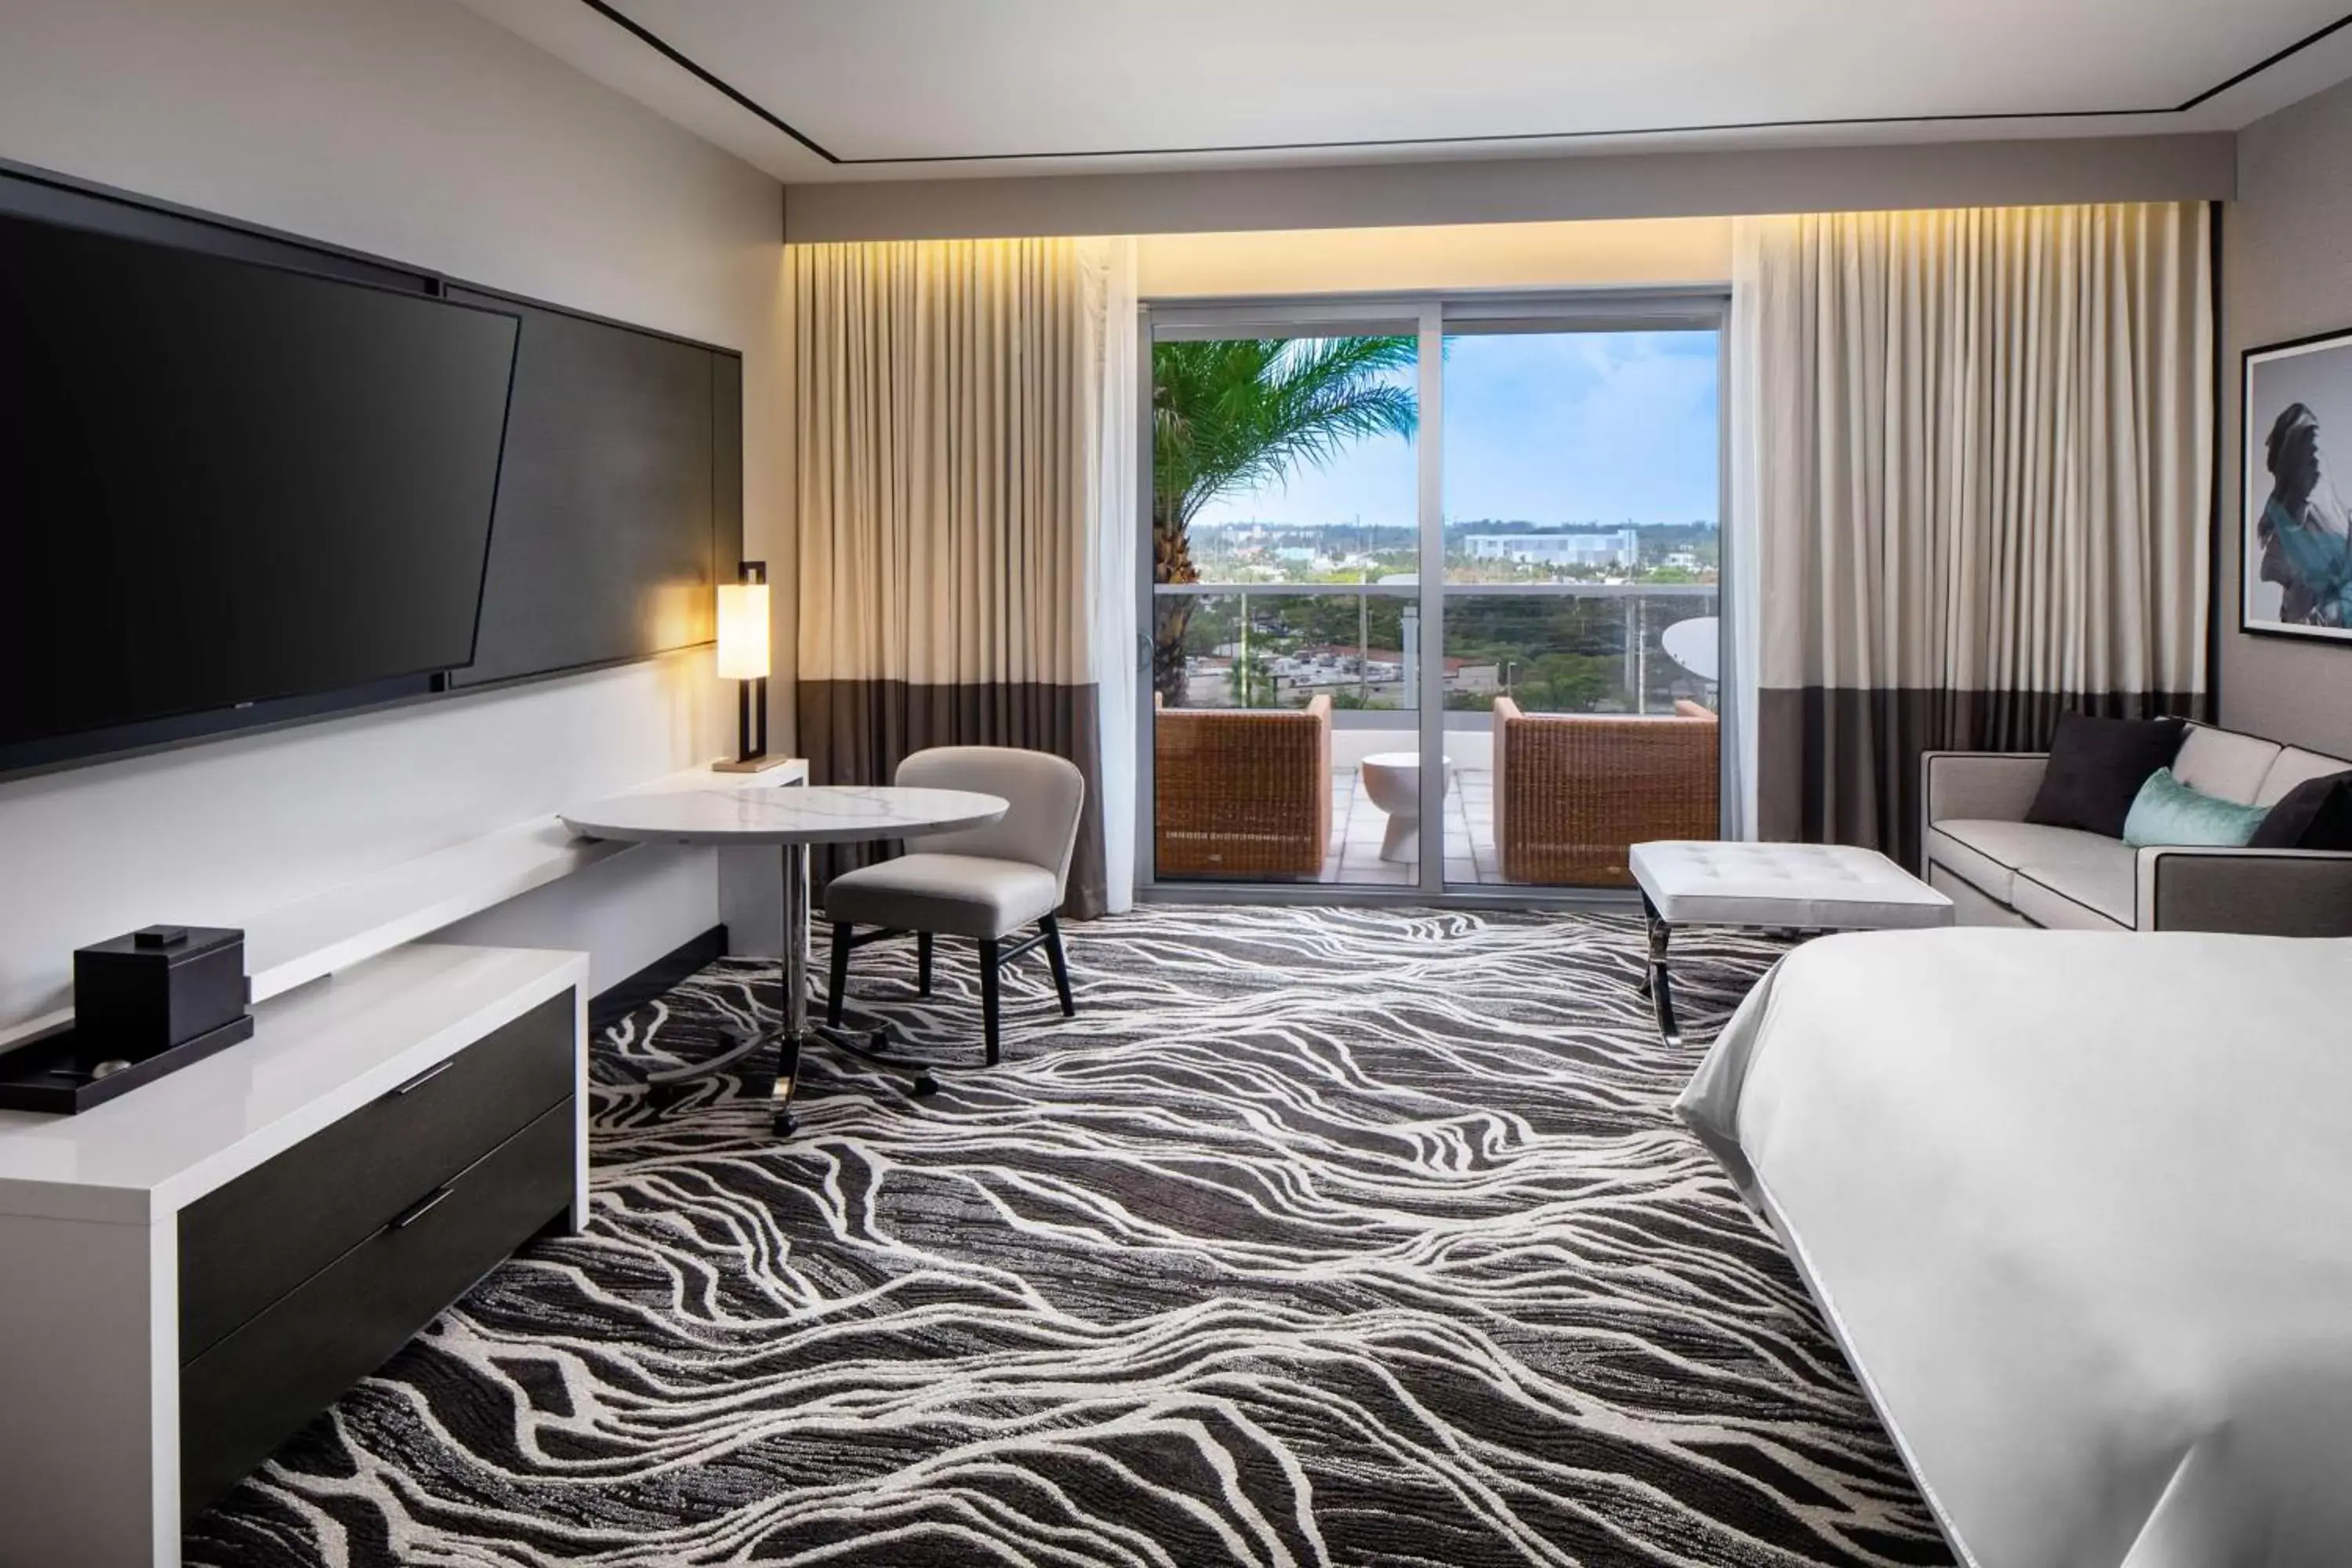 King Room with Veranda in Hilton Aventura Miami